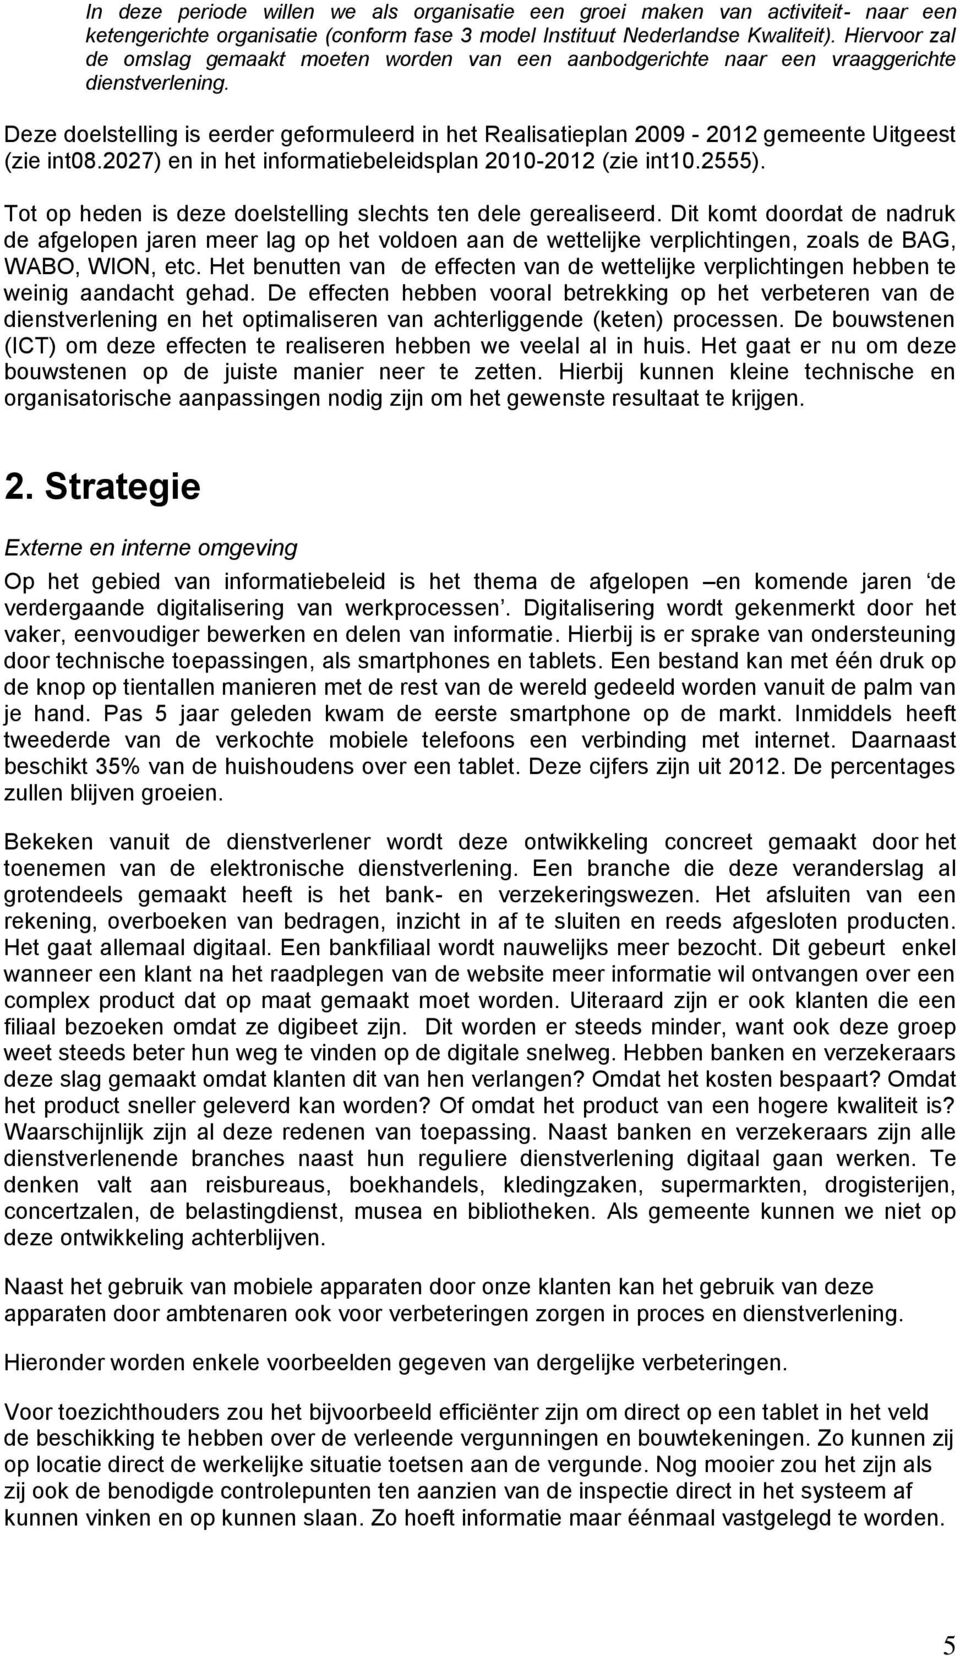 Deze doelstelling is eerder geformuleerd in het Realisatieplan 2009-2012 gemeente Uitgeest (zie int08.2027) en in het informatiebeleidsplan 2010-2012 (zie int10.2555).